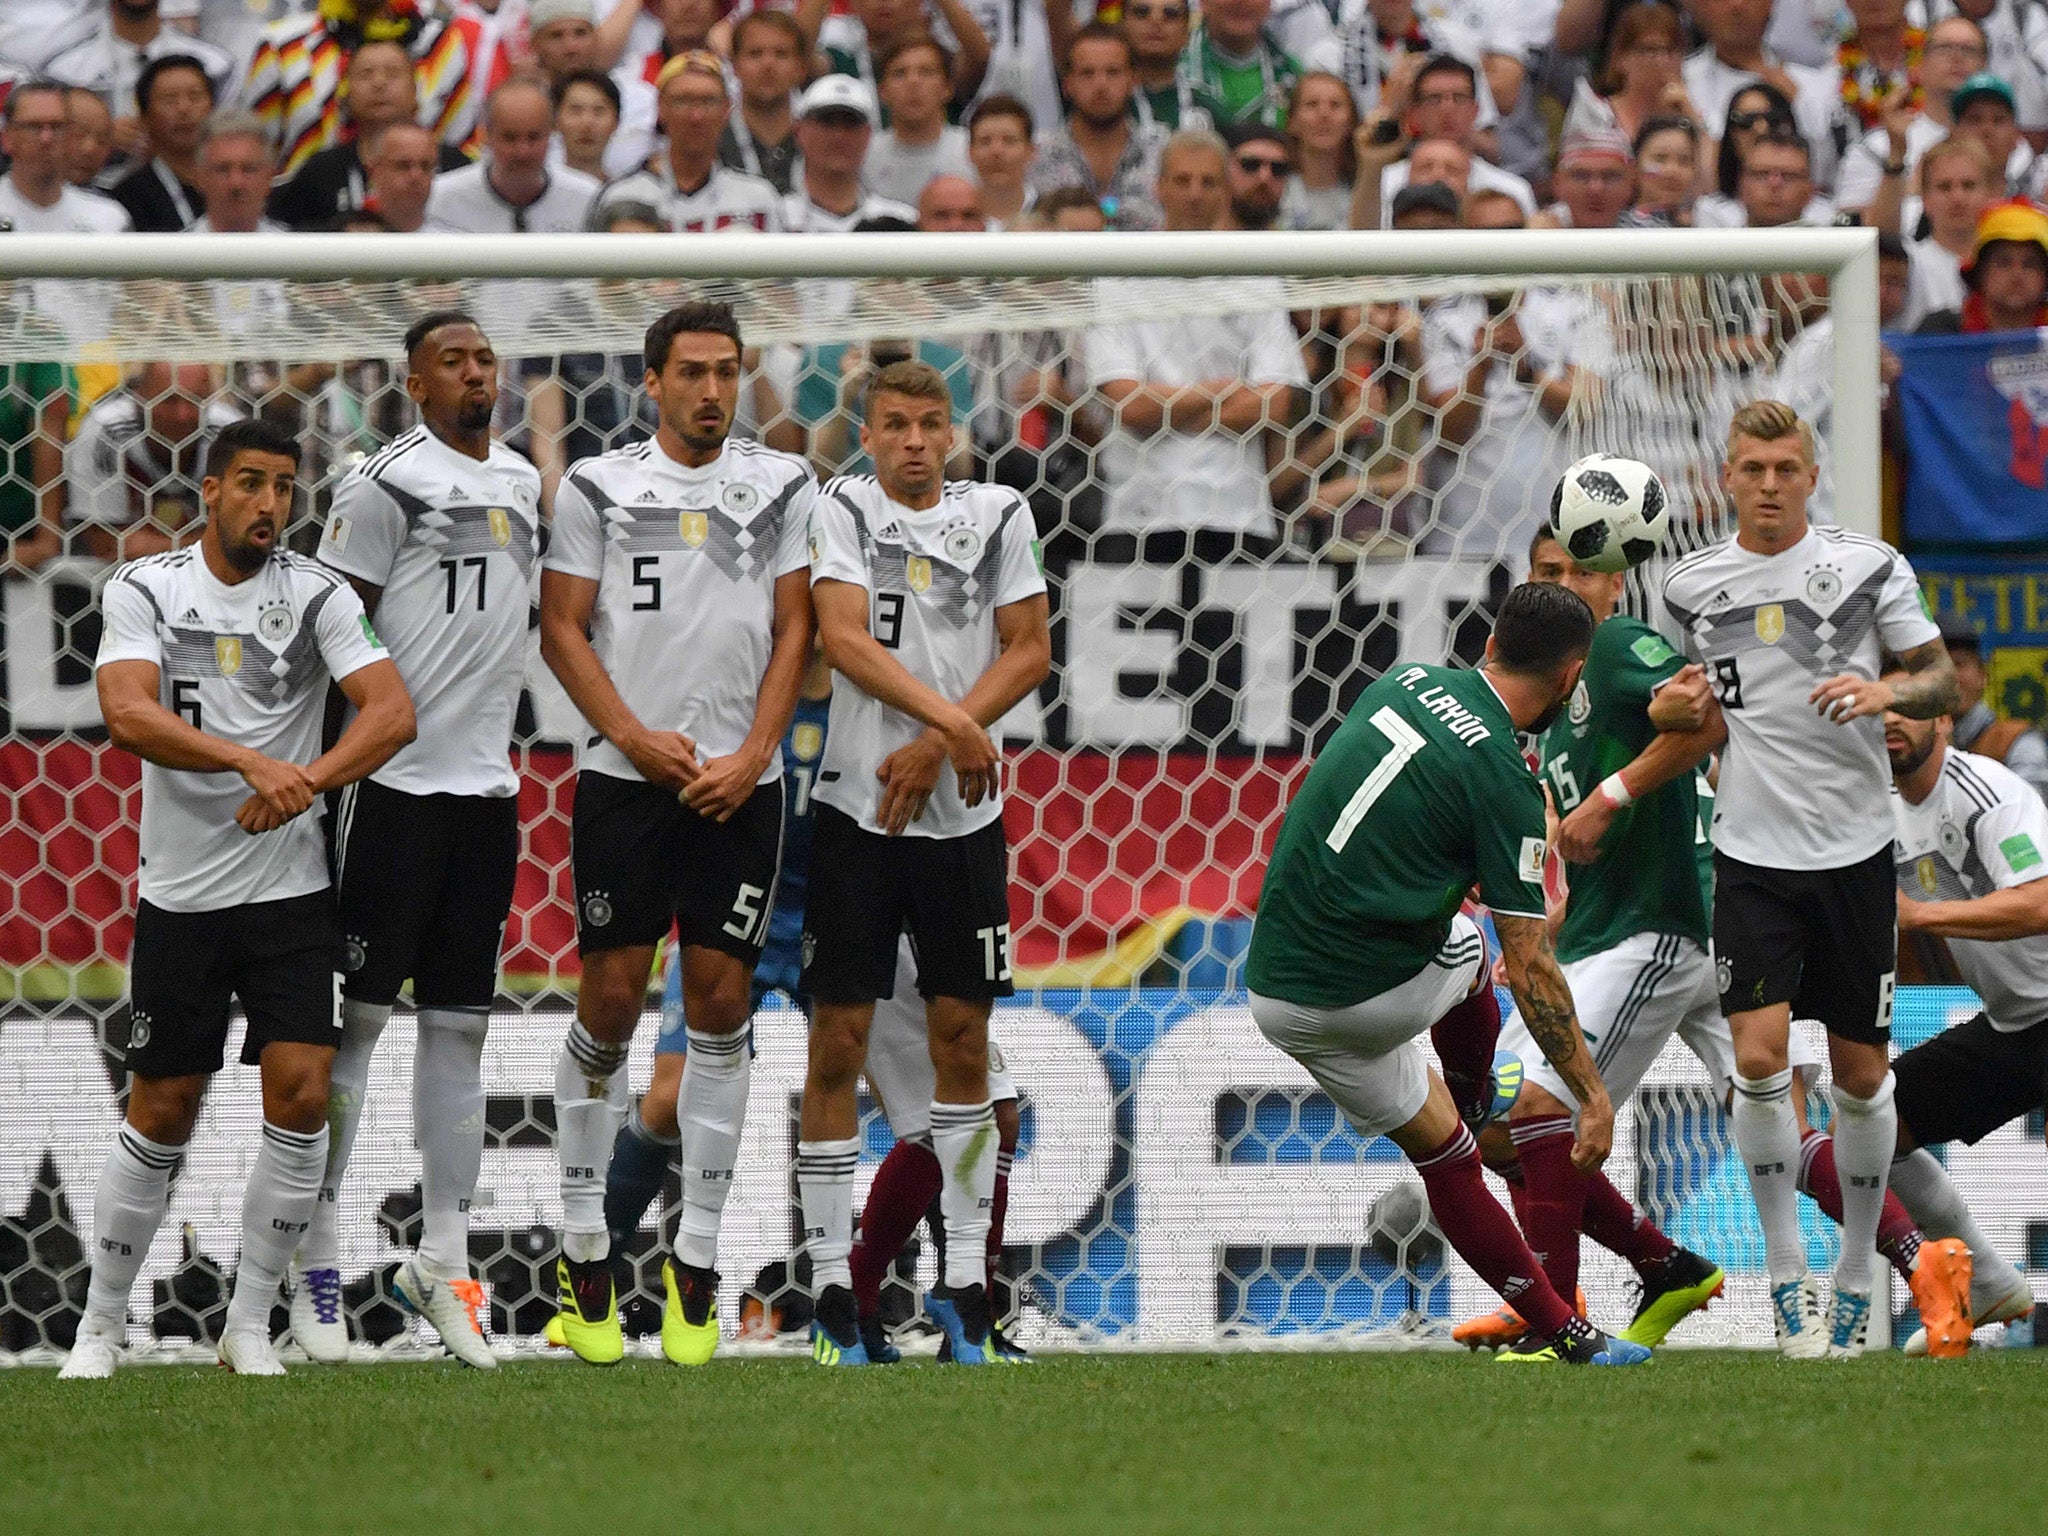 德国vs墨西哥在哪个球场进行(德国vs墨西哥在哪个球场进行比赛)